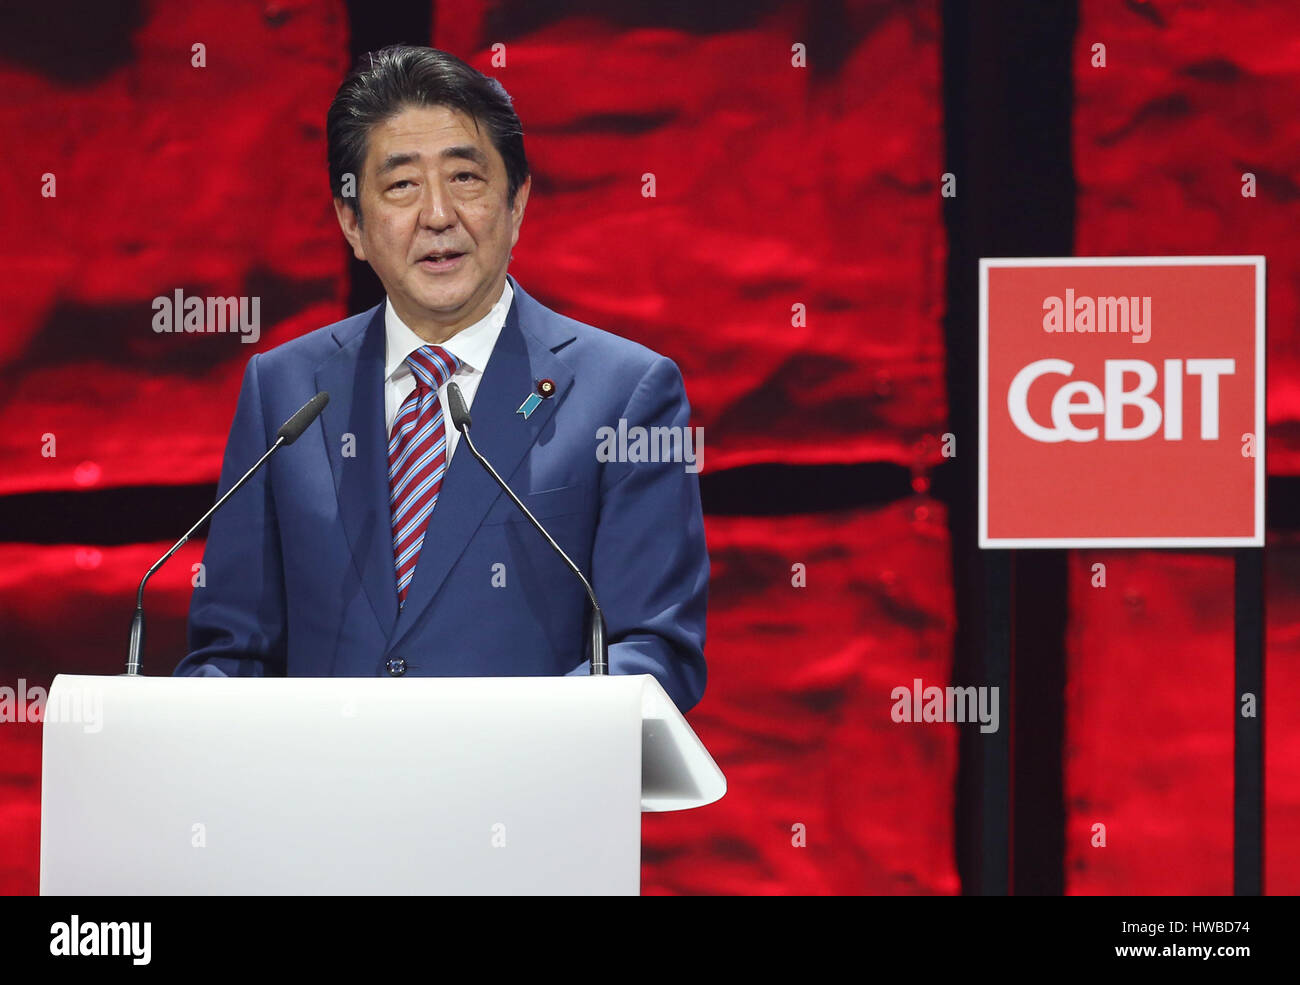 Hannover, Alemania. 19 Mar, 2017. Primer Ministro de Japón Shinzo Abe, hablando en la inauguración de la feria CeBIT en Hannover, Alemania, el 19 de marzo de 2017. Japón es el país socio de la CeBIT 2017. Foto: Friso Gentsch/dpa/Alamy Live News Foto de stock